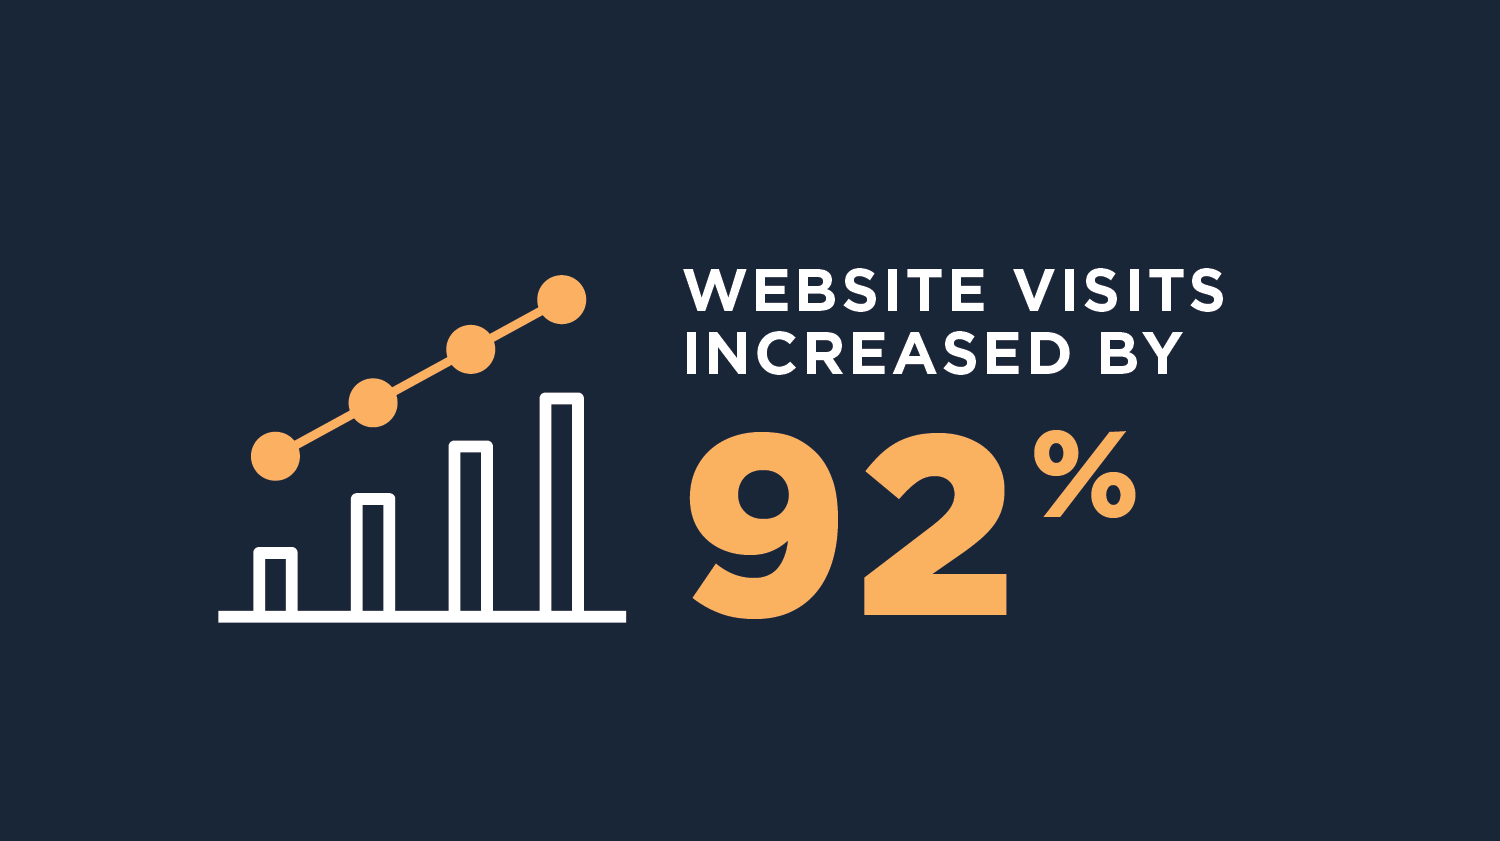 Website visits increased by 92%